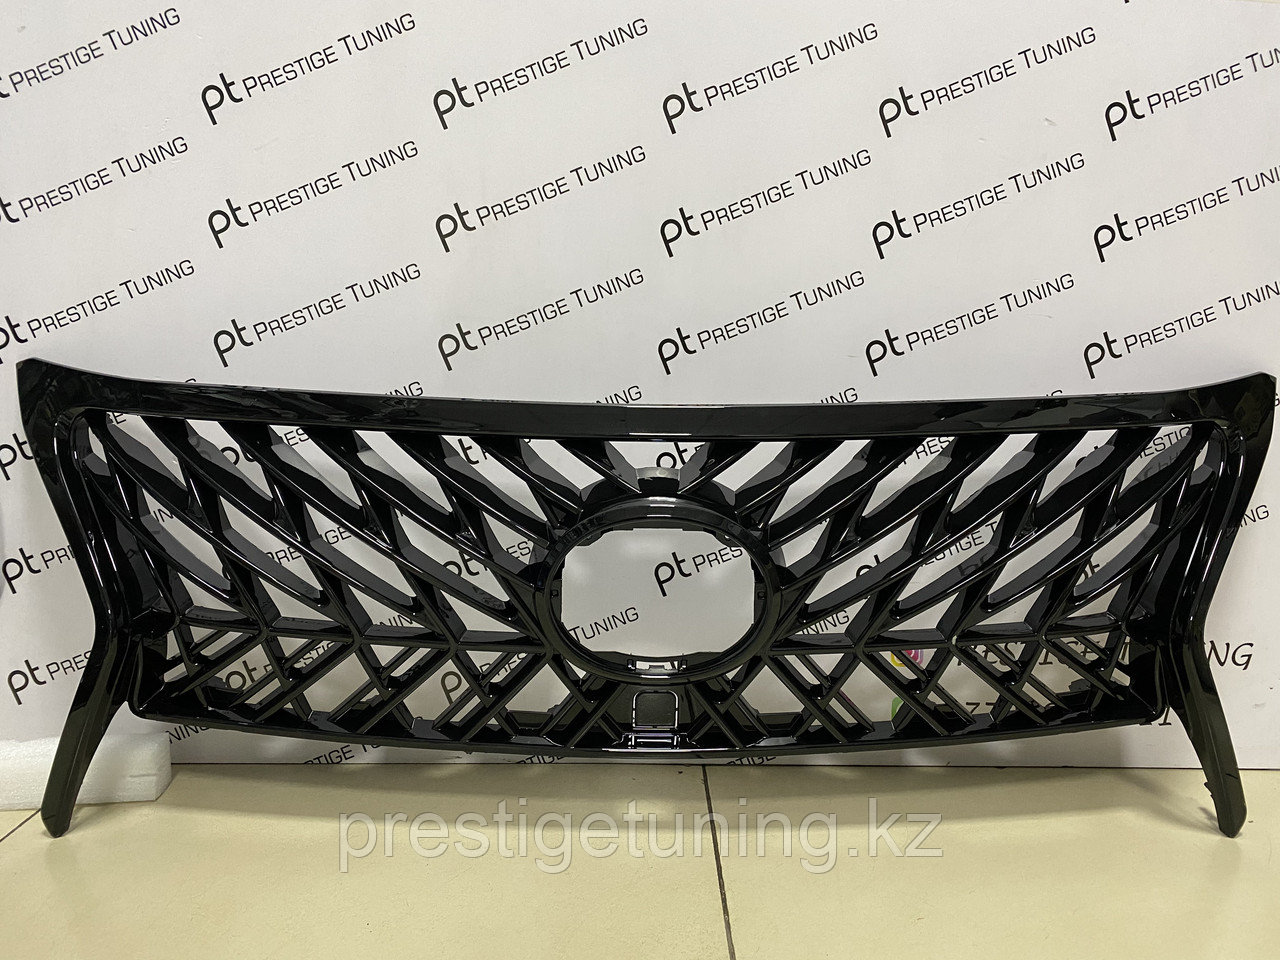 Решетка радиатора на Lexus LX570 2012-15 год стиль Superior с черной окантовкой